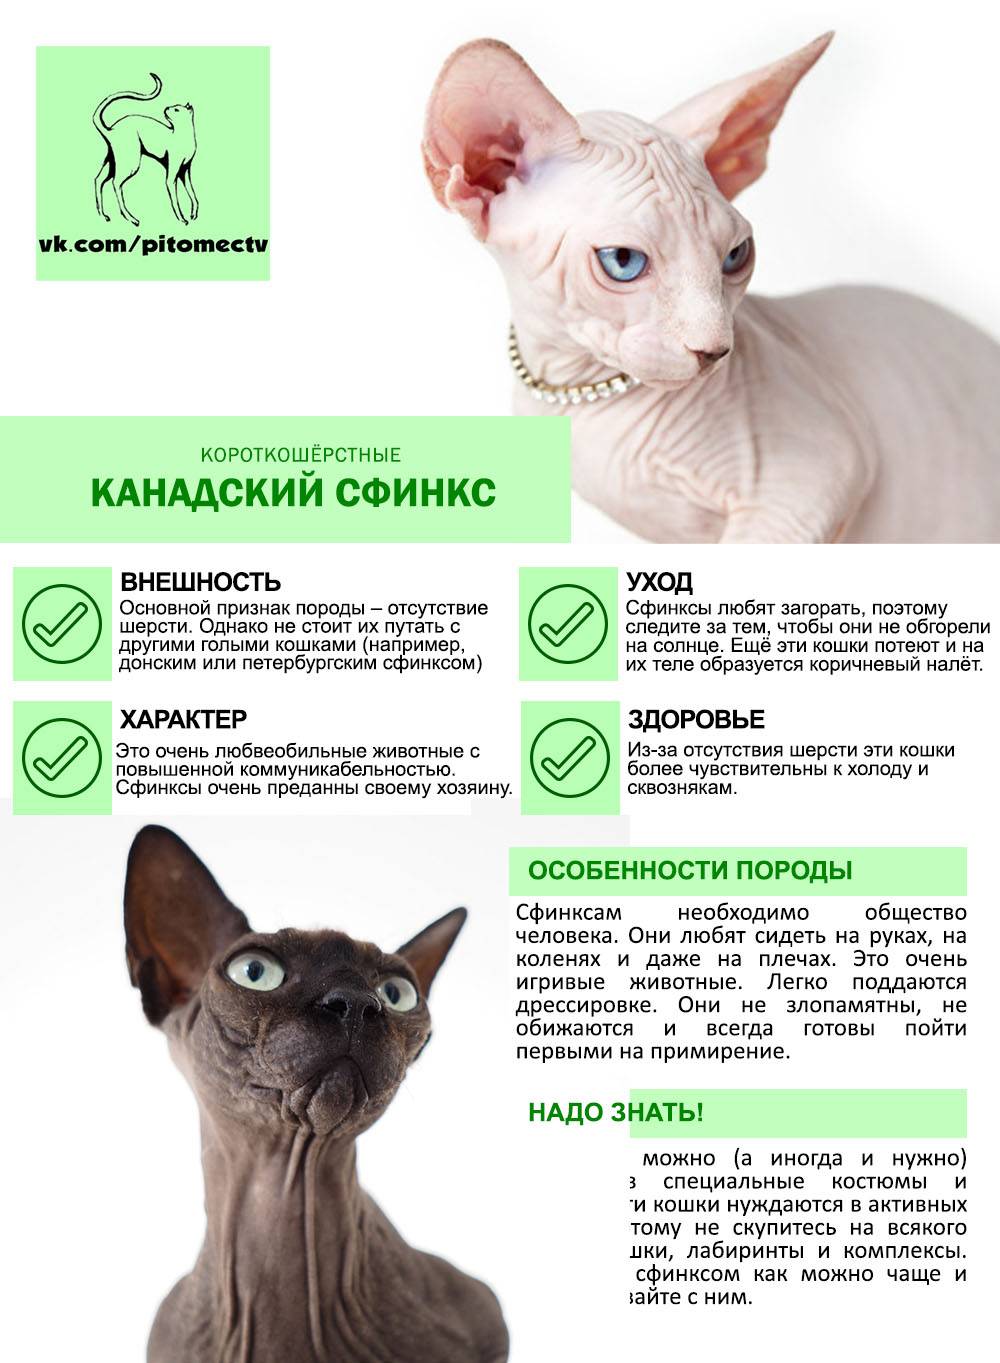 Рэгдолл: порода кошек с интересным окрасом, описание и фото, характер и сколько живут, стоимость котят и цена взрослых котов